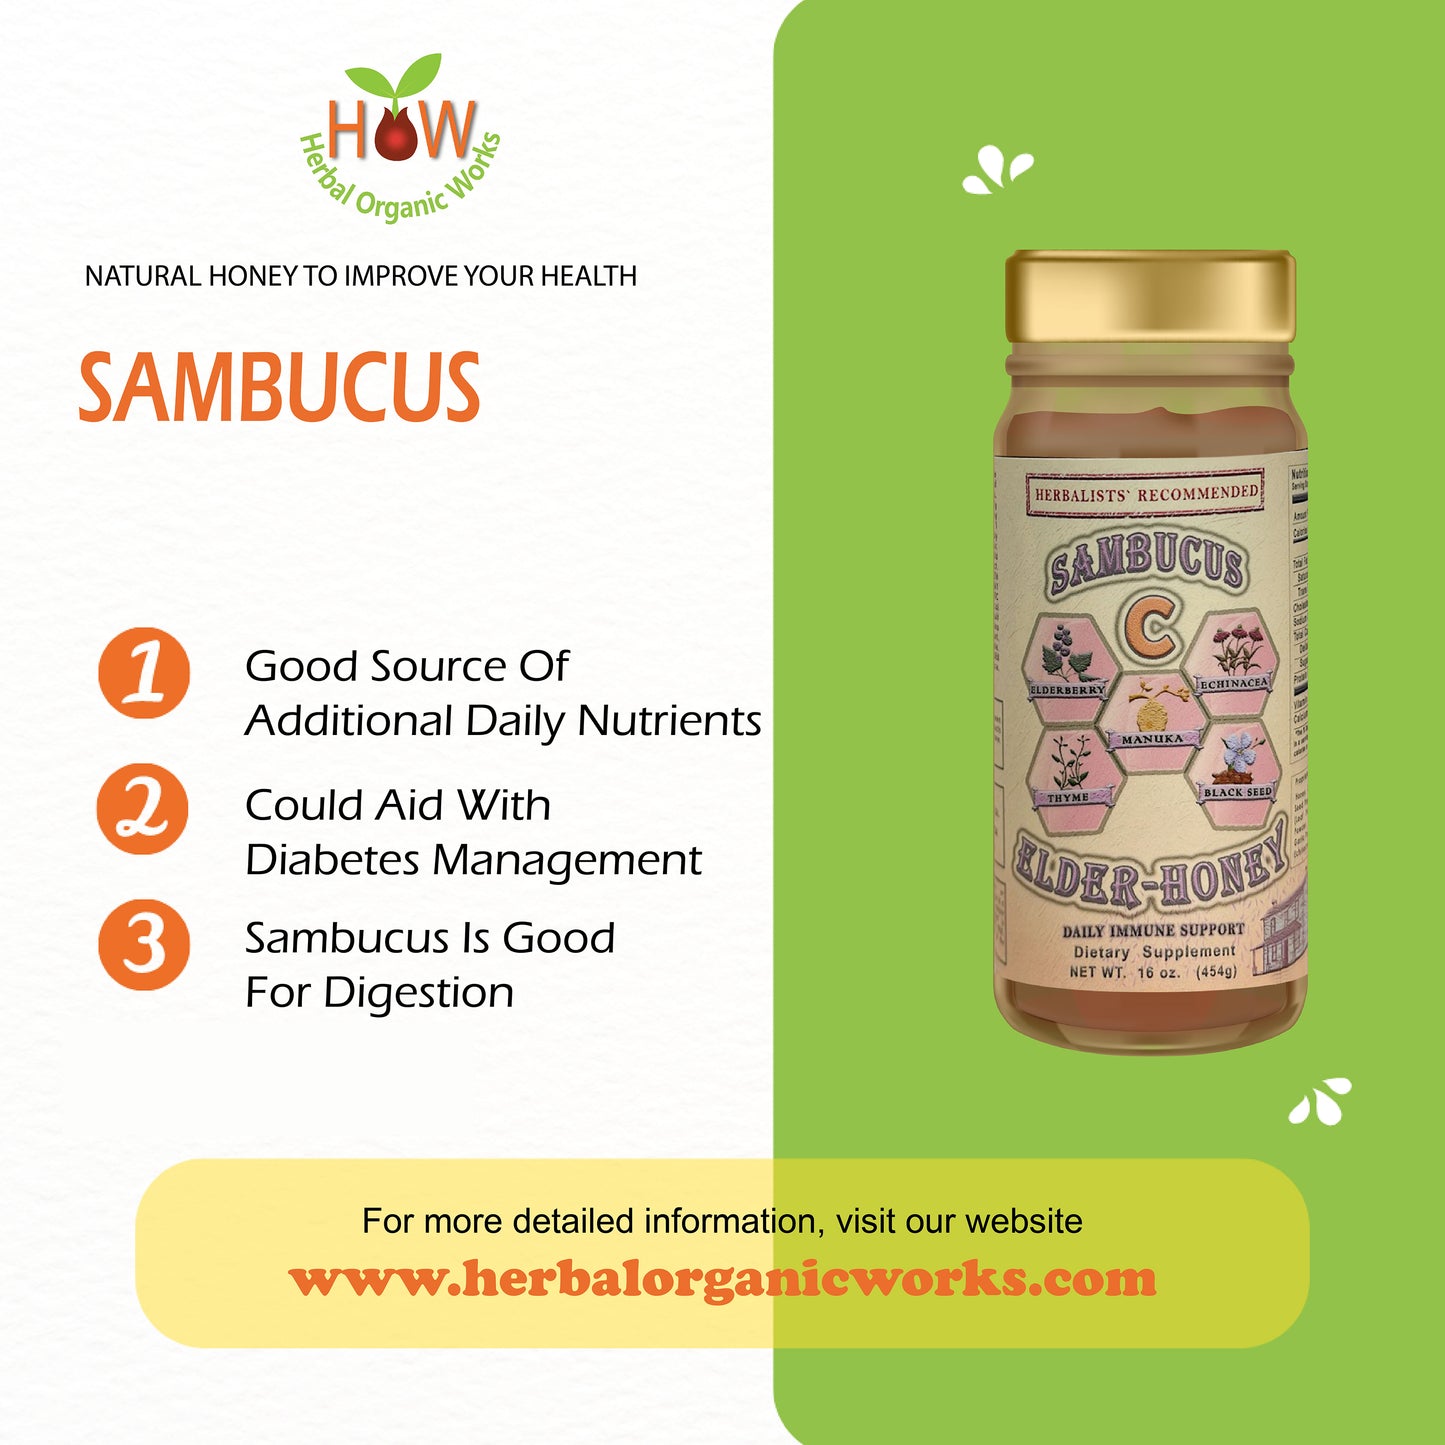 SAMBUCUS Elder Honey